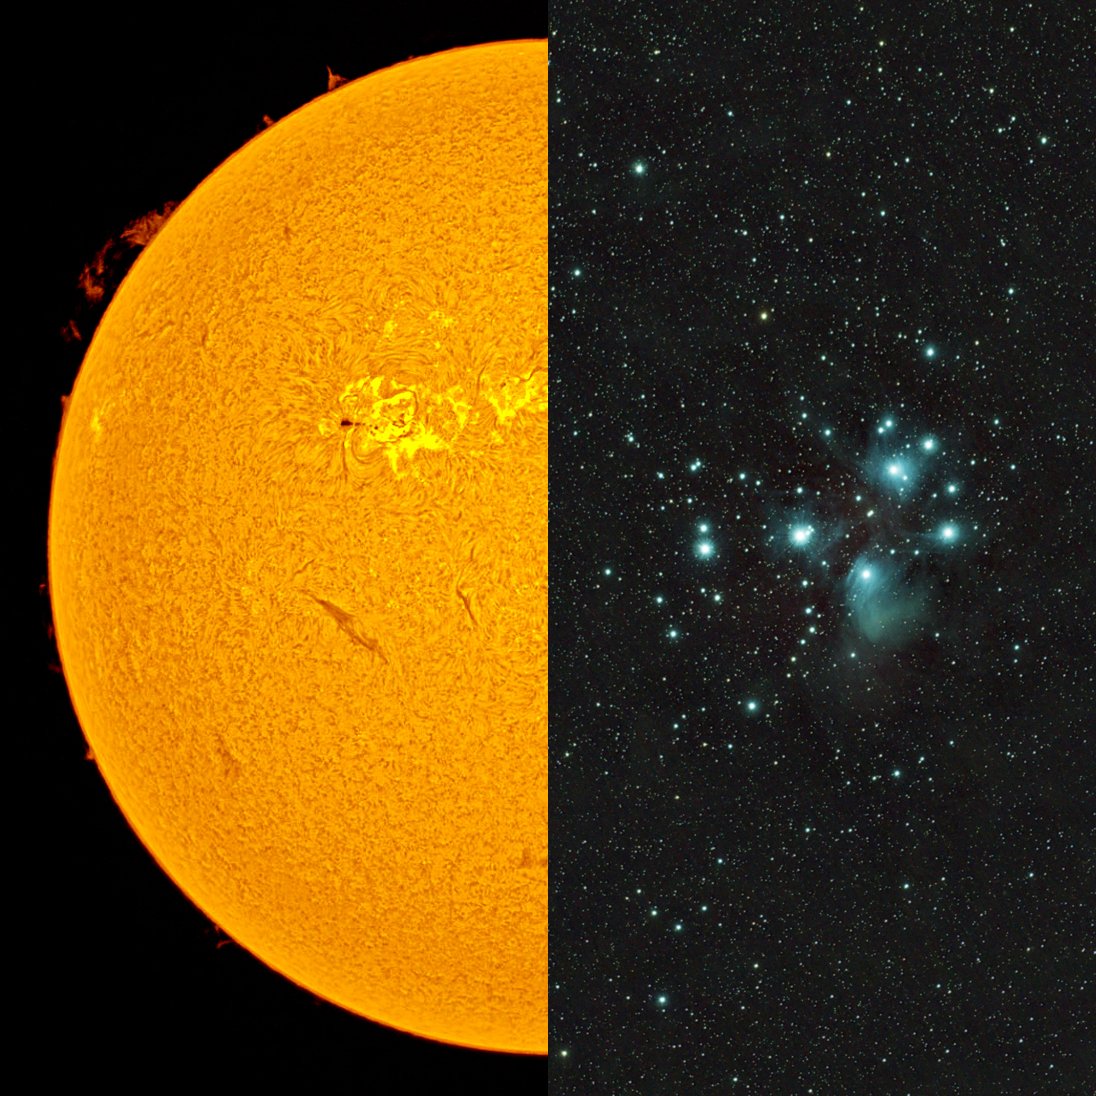 LUNT LS80MT/B1800R&P Télescope APO polyvalent pour le soleil + le ciel étoilé